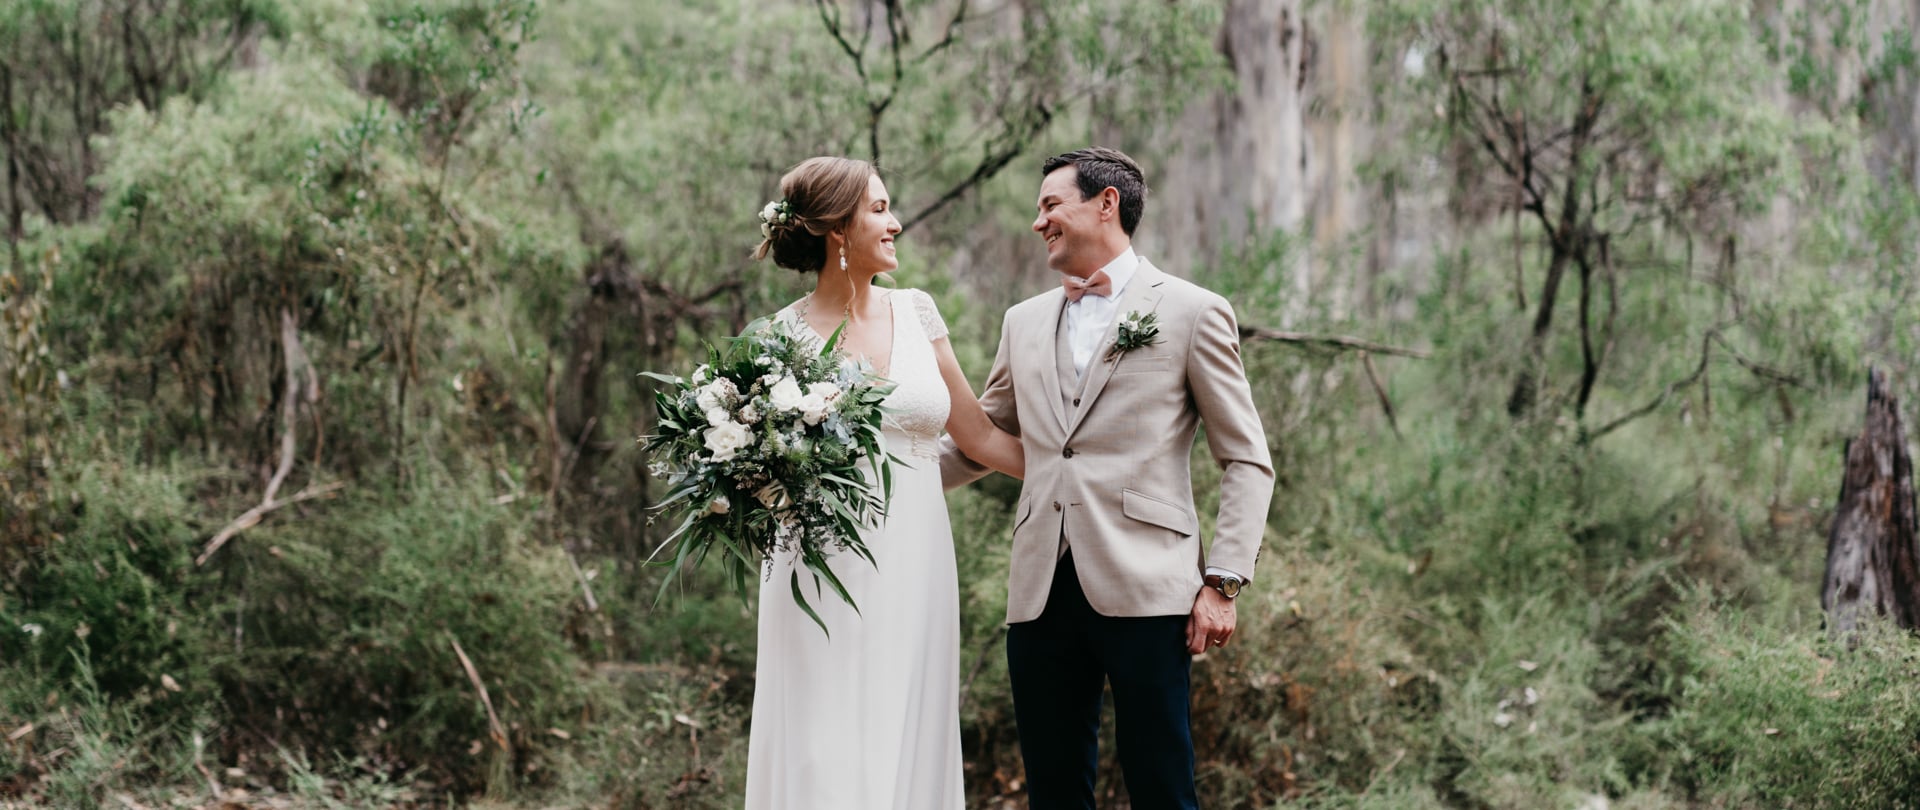 Sophie & Sebastian Wedding Video Filmed atMargaret River,Western Australia